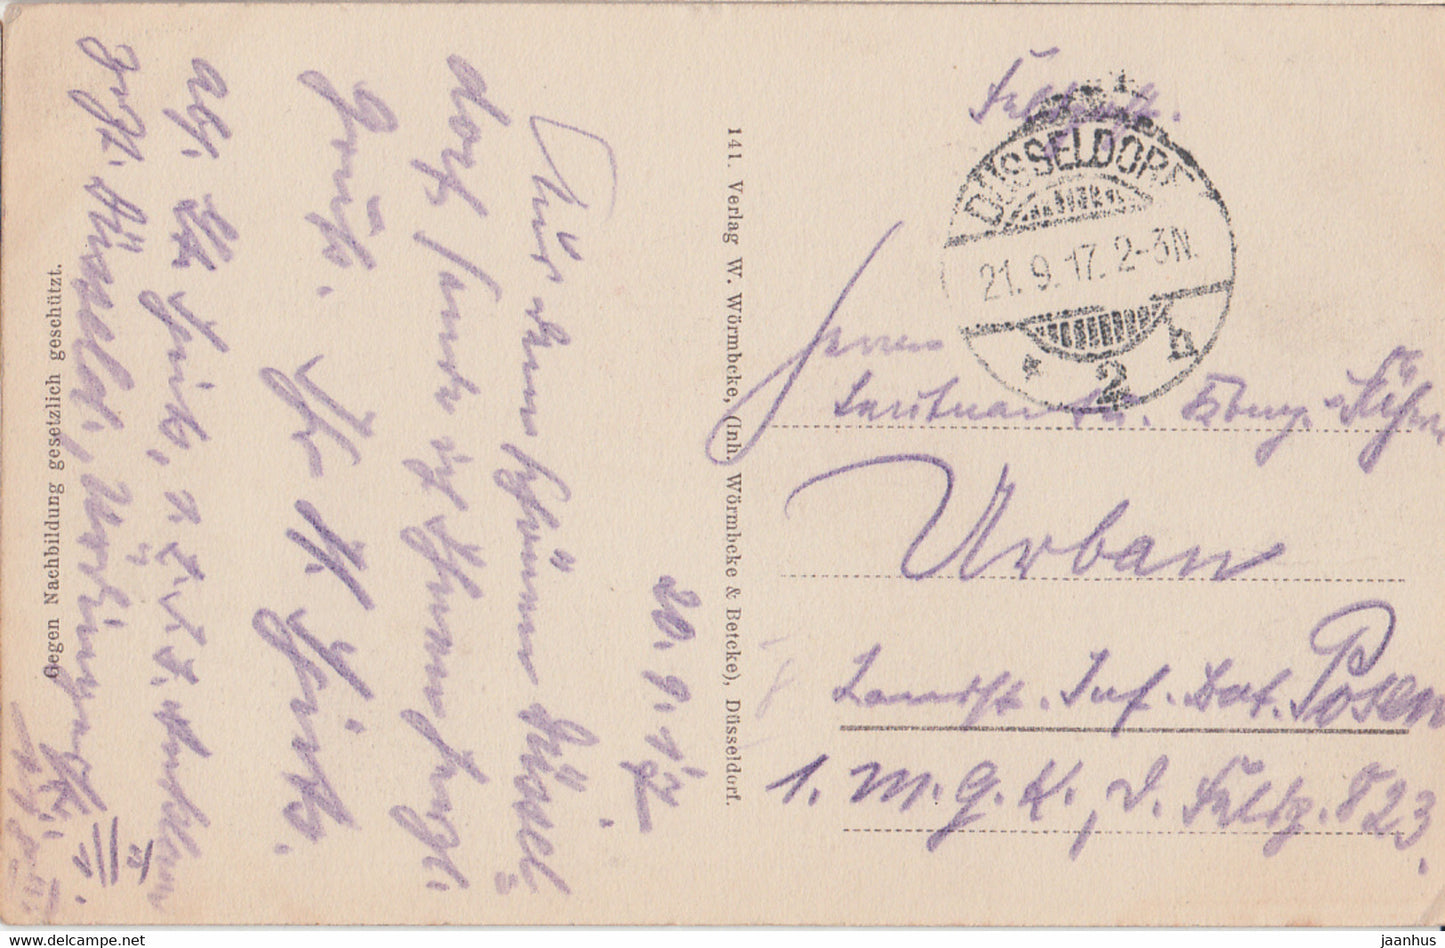 Düsseldorf - Kunsthalle - Feldpost - alte Postkarte - 1917 - Deutschland - gebraucht